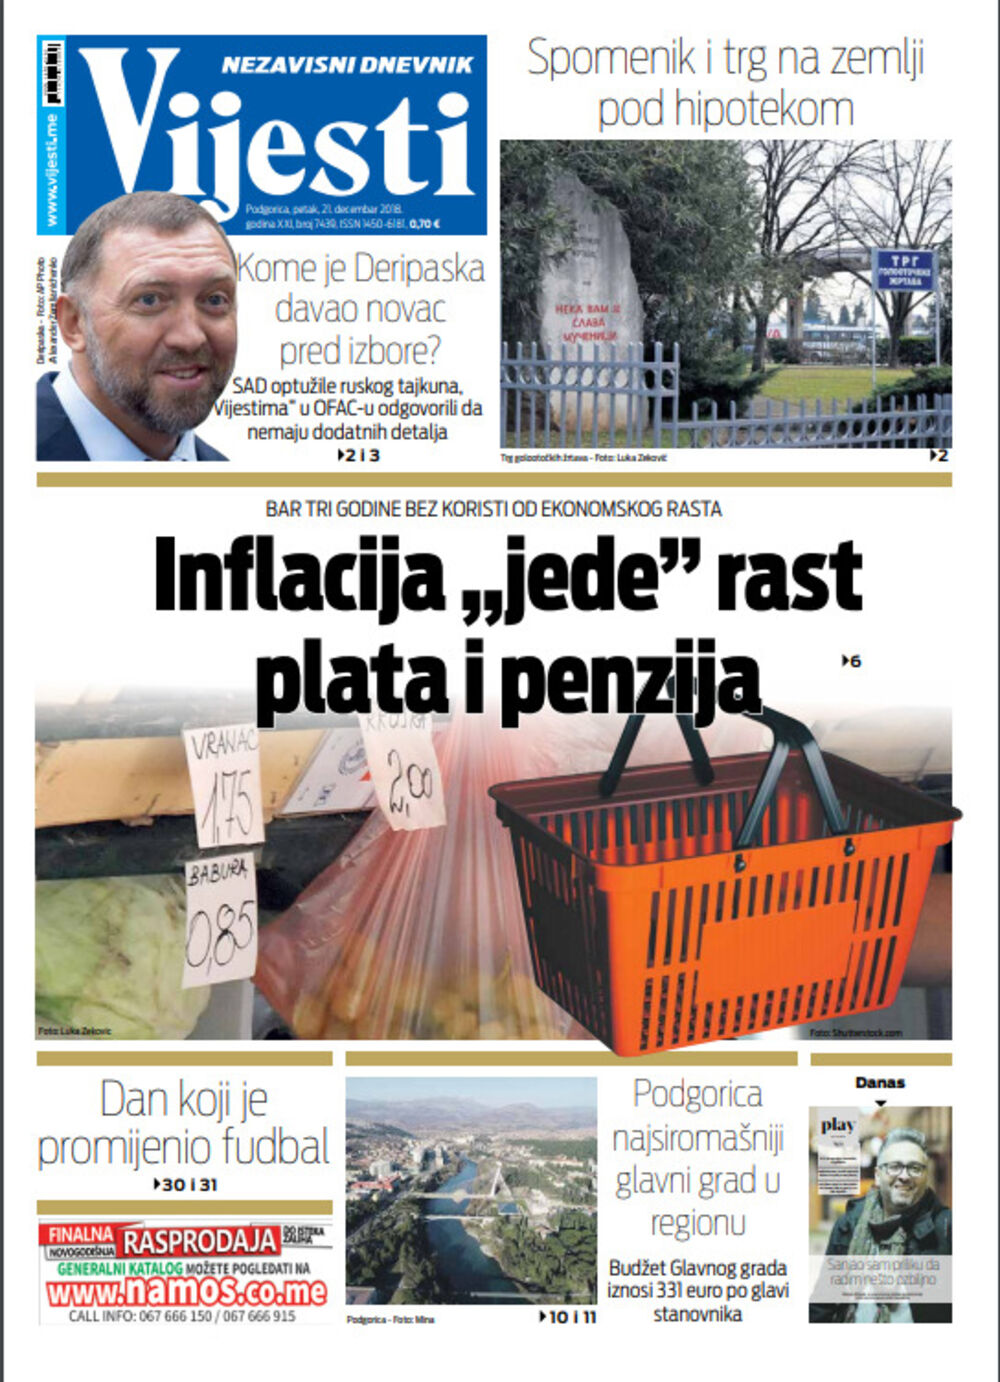 Naslovna strana "Vijesti" za 21. decembar, Foto: Vijesti